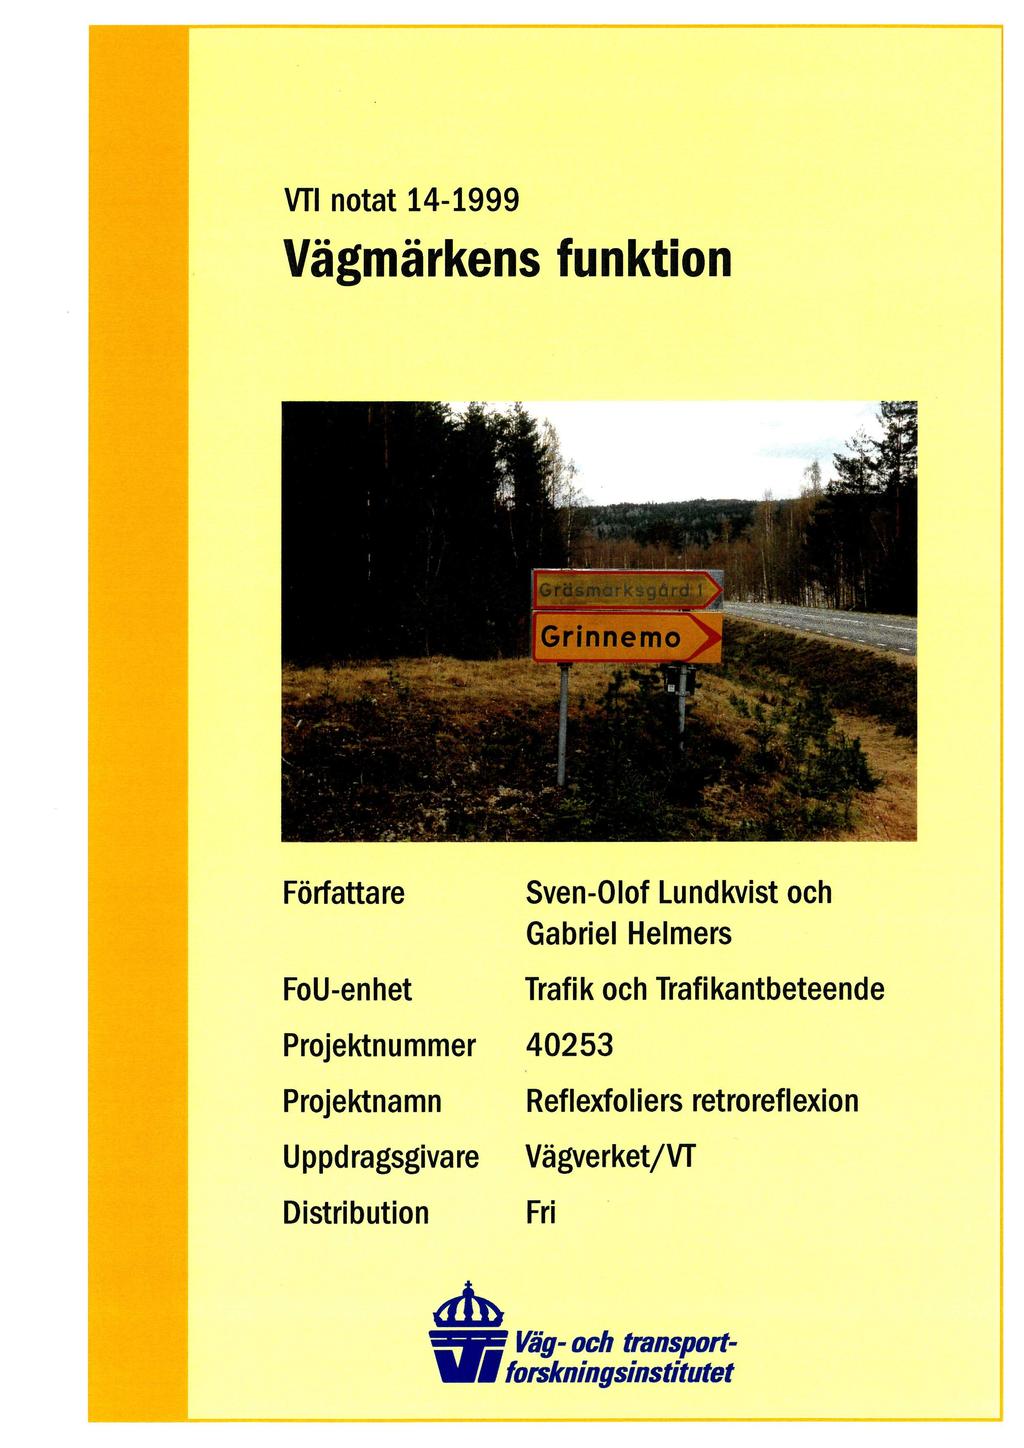 VTI notat 14-1999 Vägmärkens funktion Författare FoU-enhet Sven-Olof Lundkvist och Gabriel Helmers Trafik och Trafikantbeteende